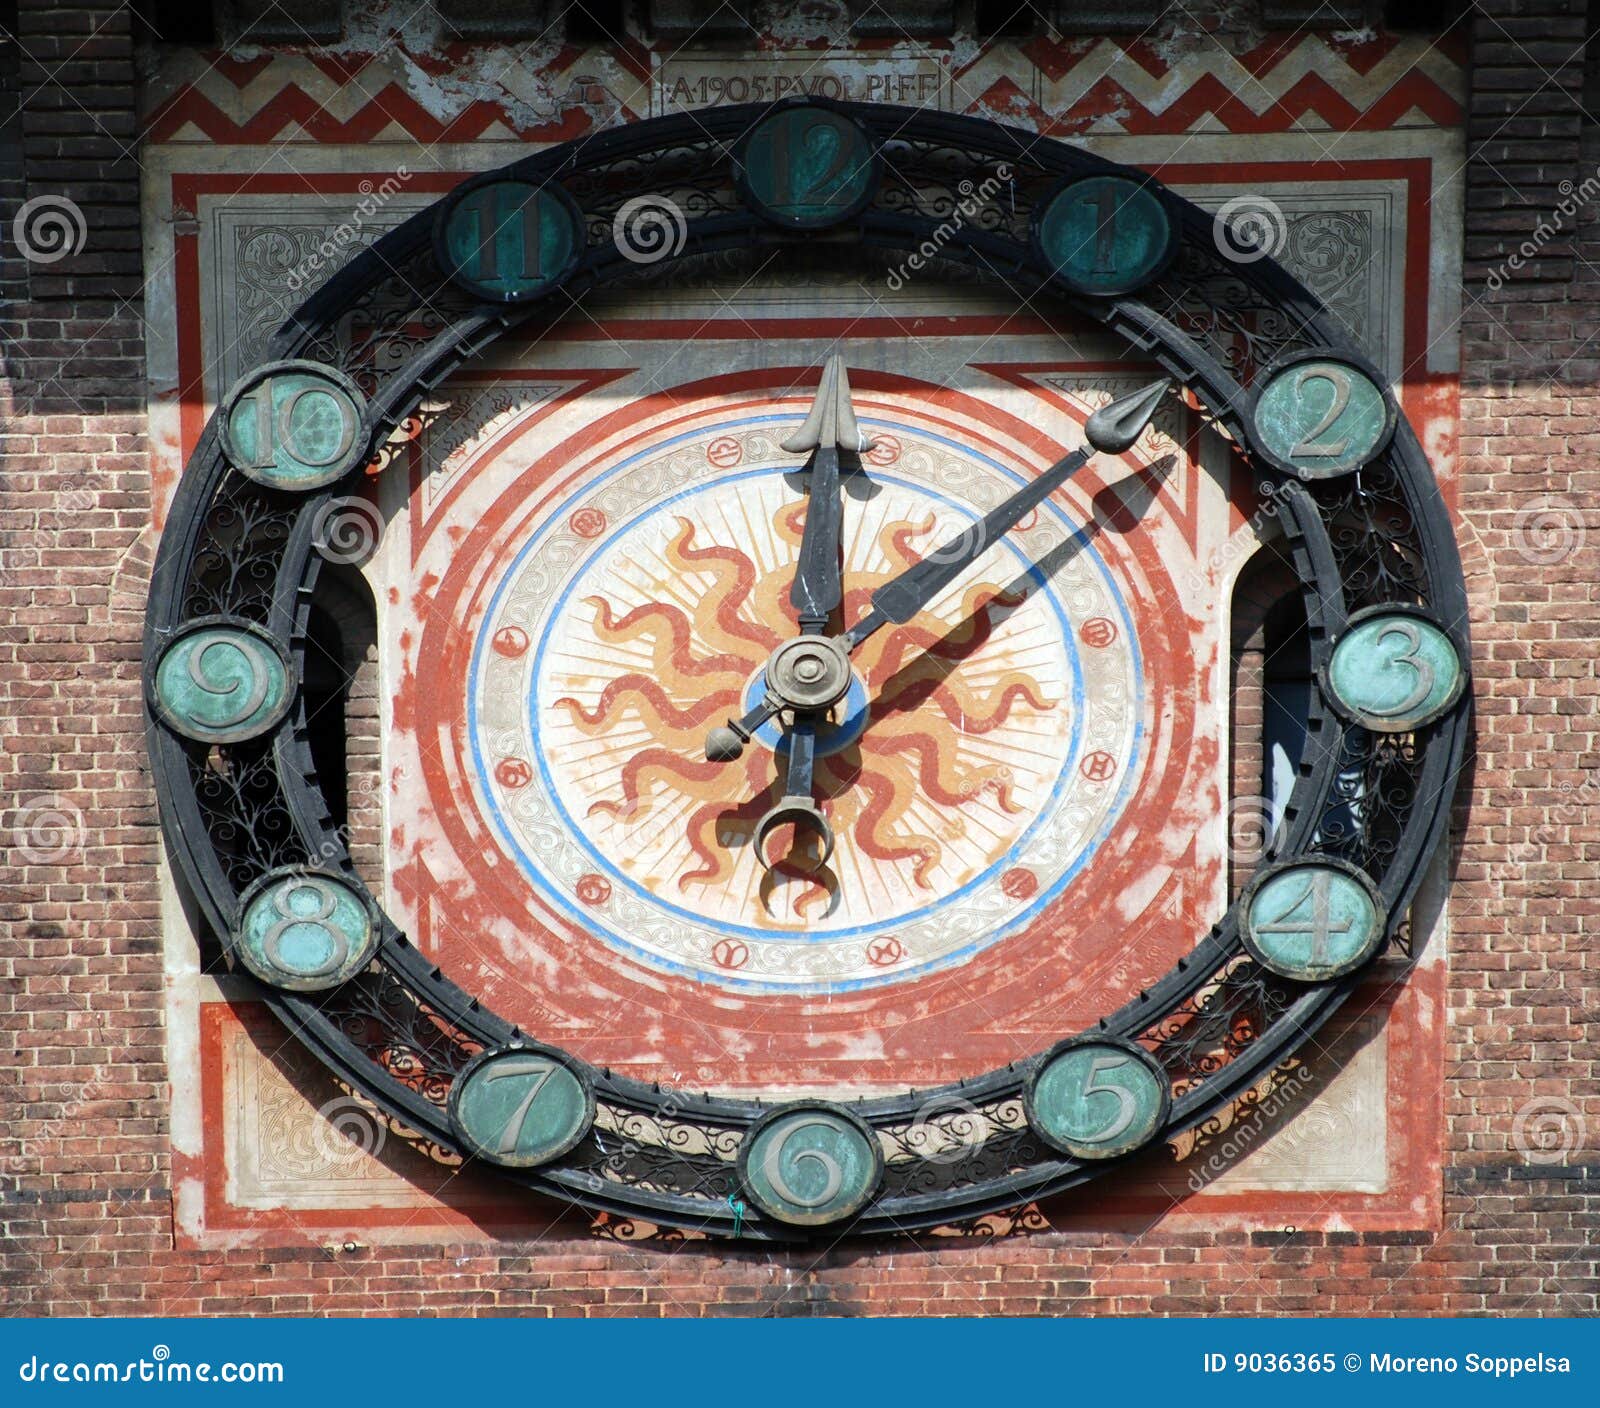 milan - clock at castello sforzesco, sforza castle